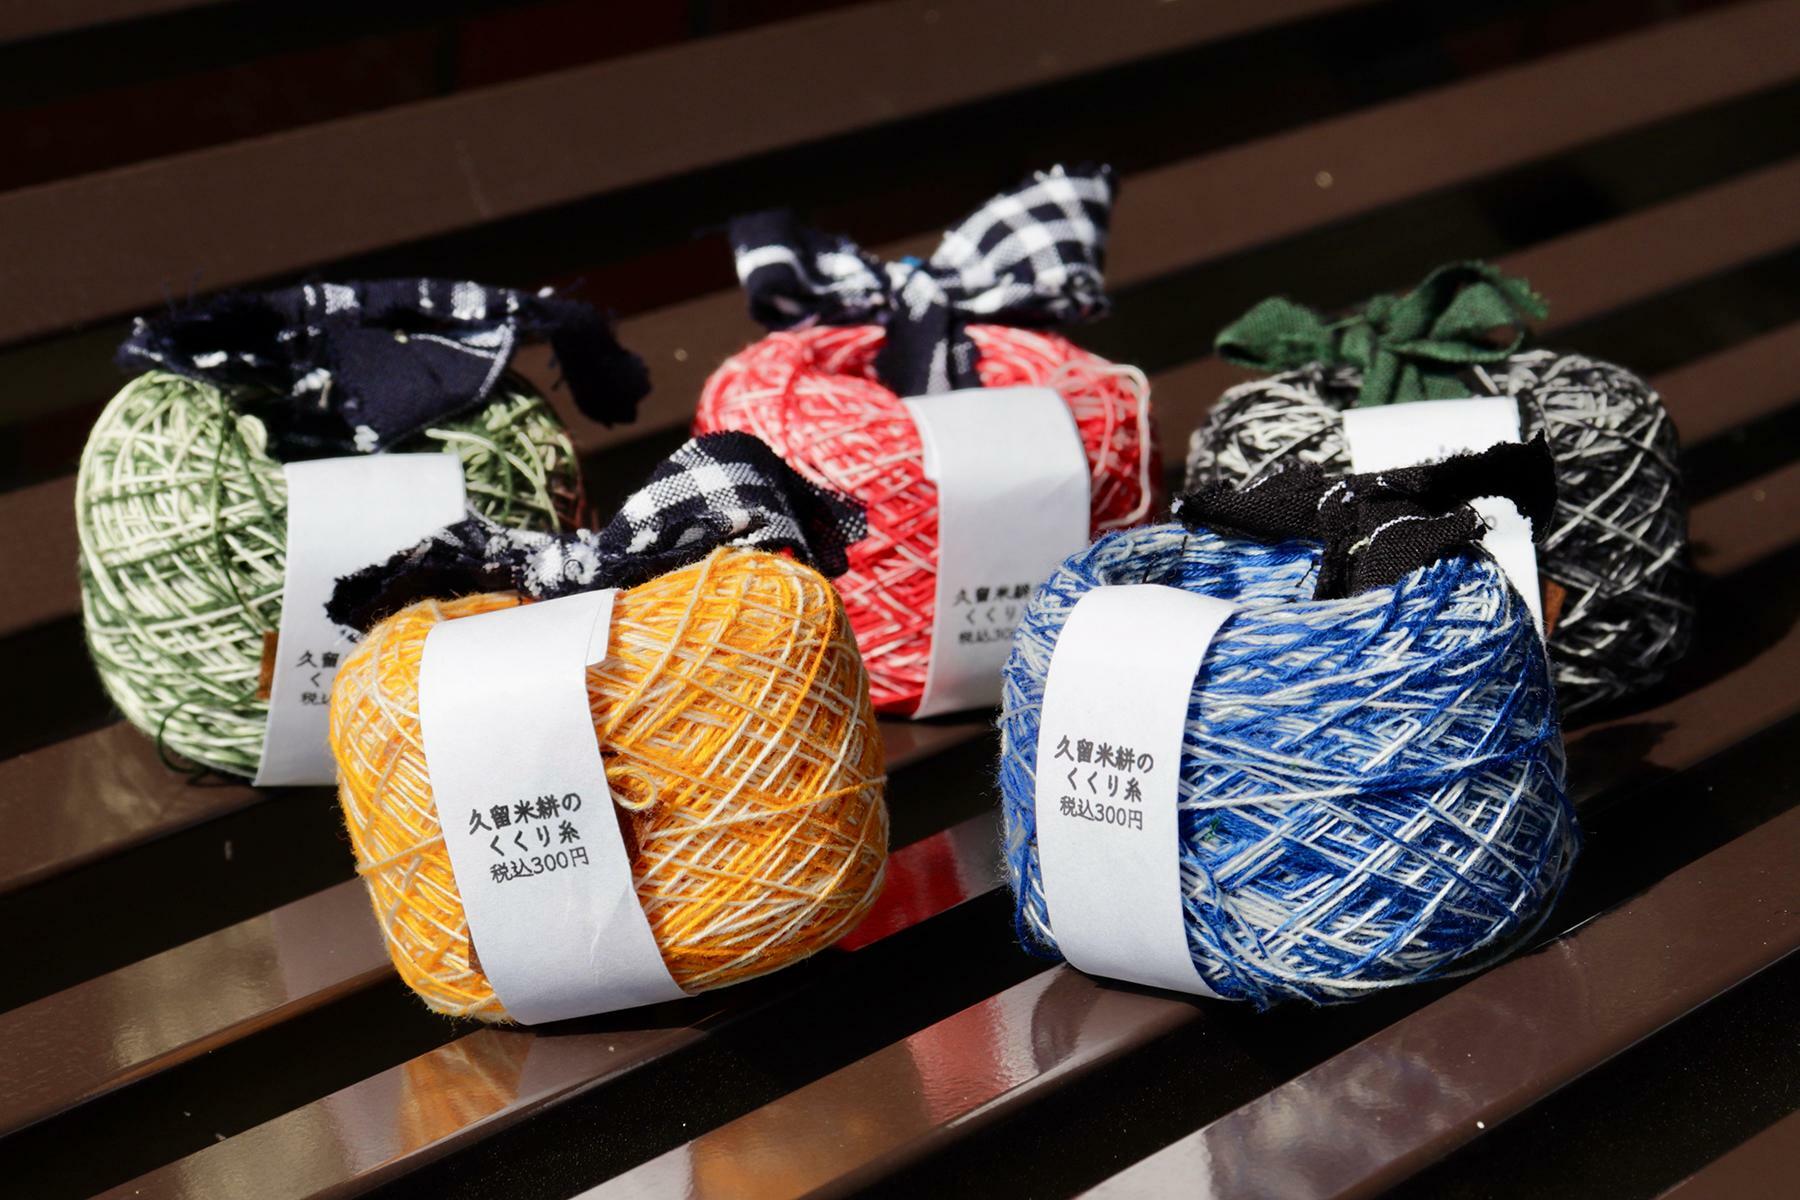 久留米絣の生産工程で出てくる「くくり糸」。近年ではニットや靴下などに加工する再利用も進んでいる。